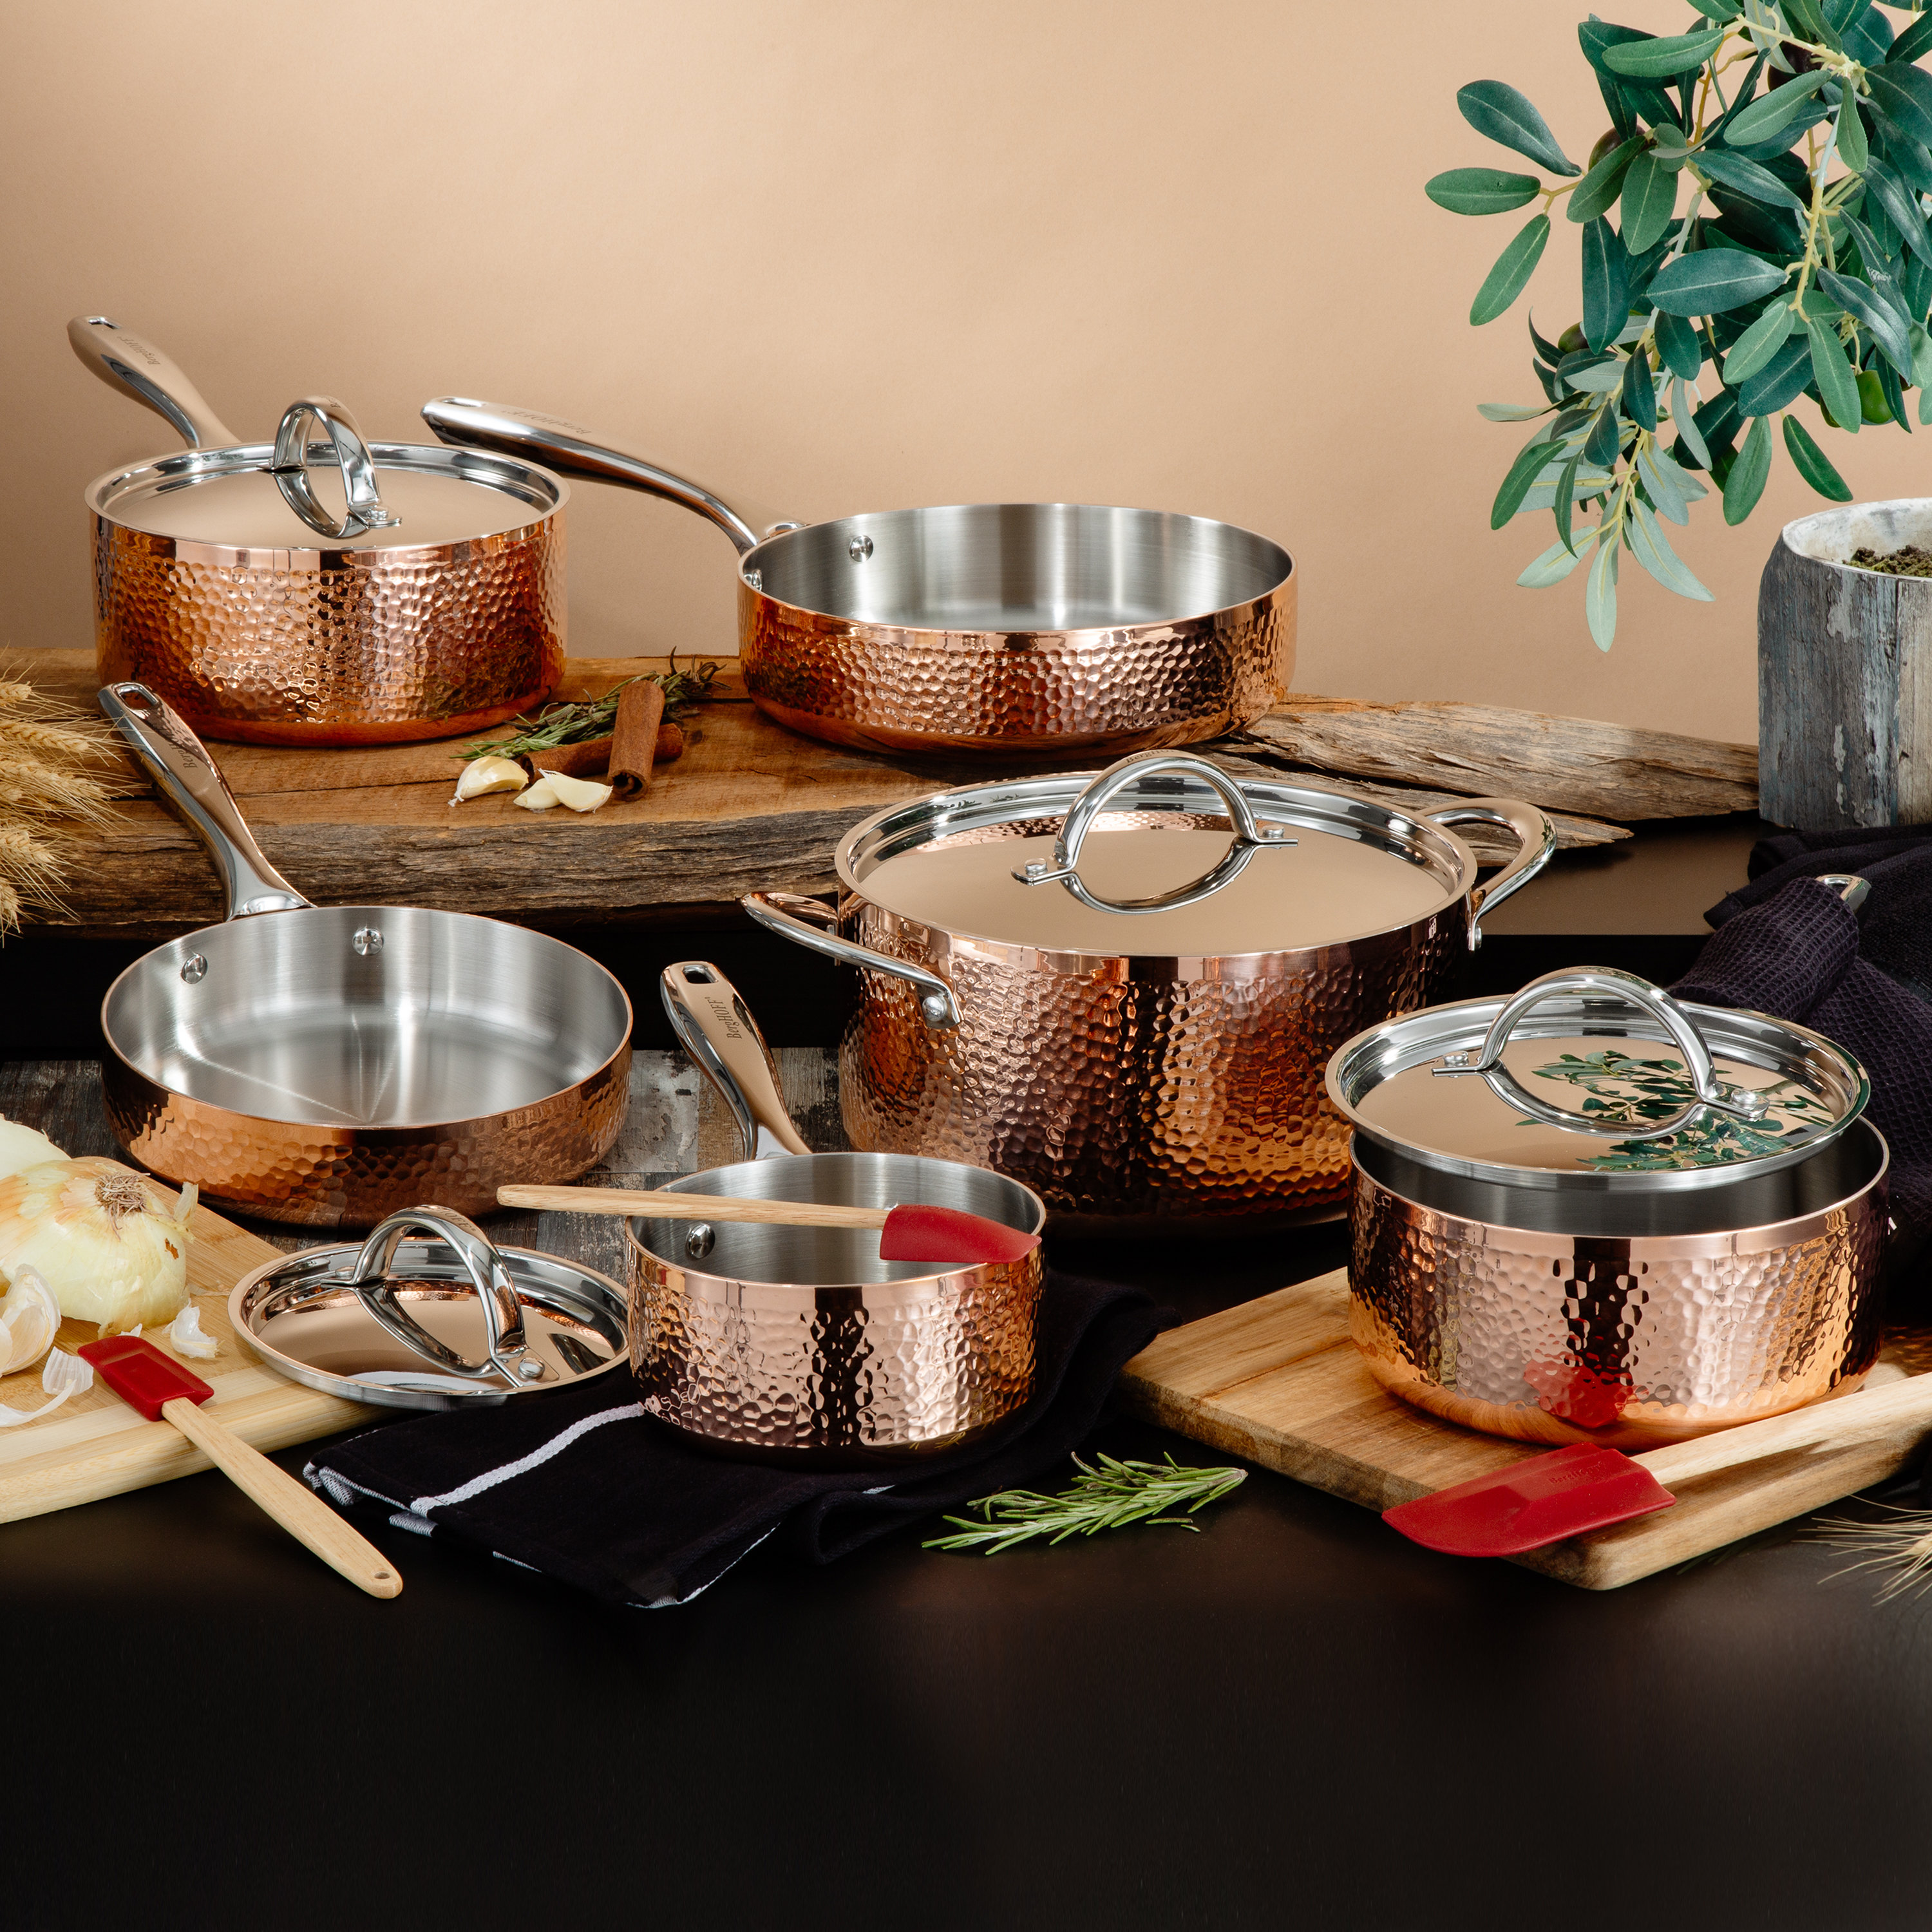 7 Piece Aluminum Non-Stick Cookware Set, Dishwasher Safe Pots & Pans, Copper, Bronze